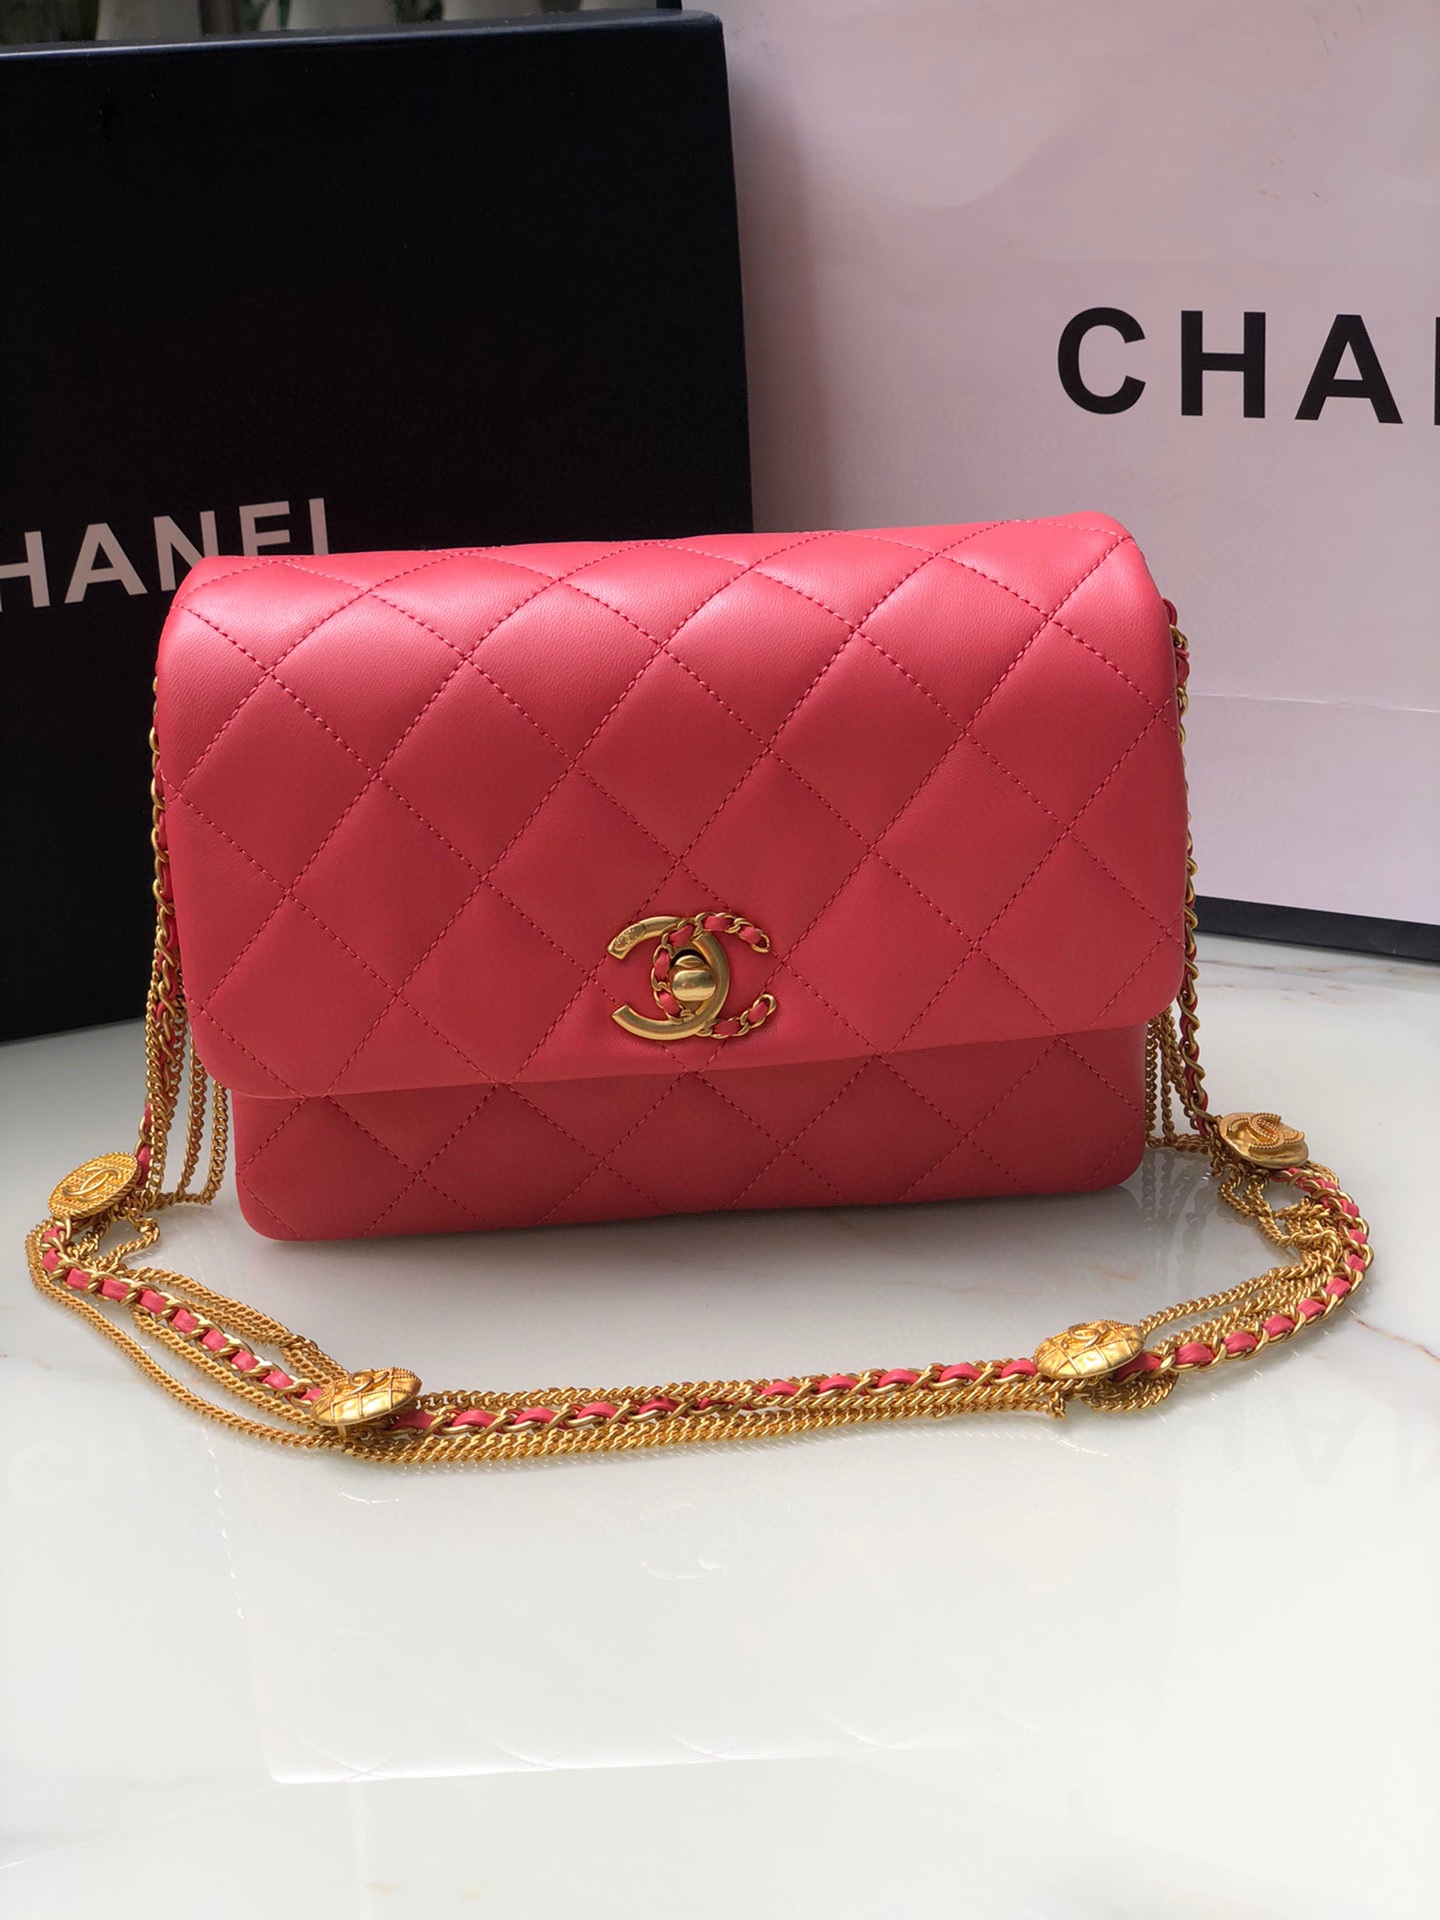 品牌:Chanel型号:AS3378